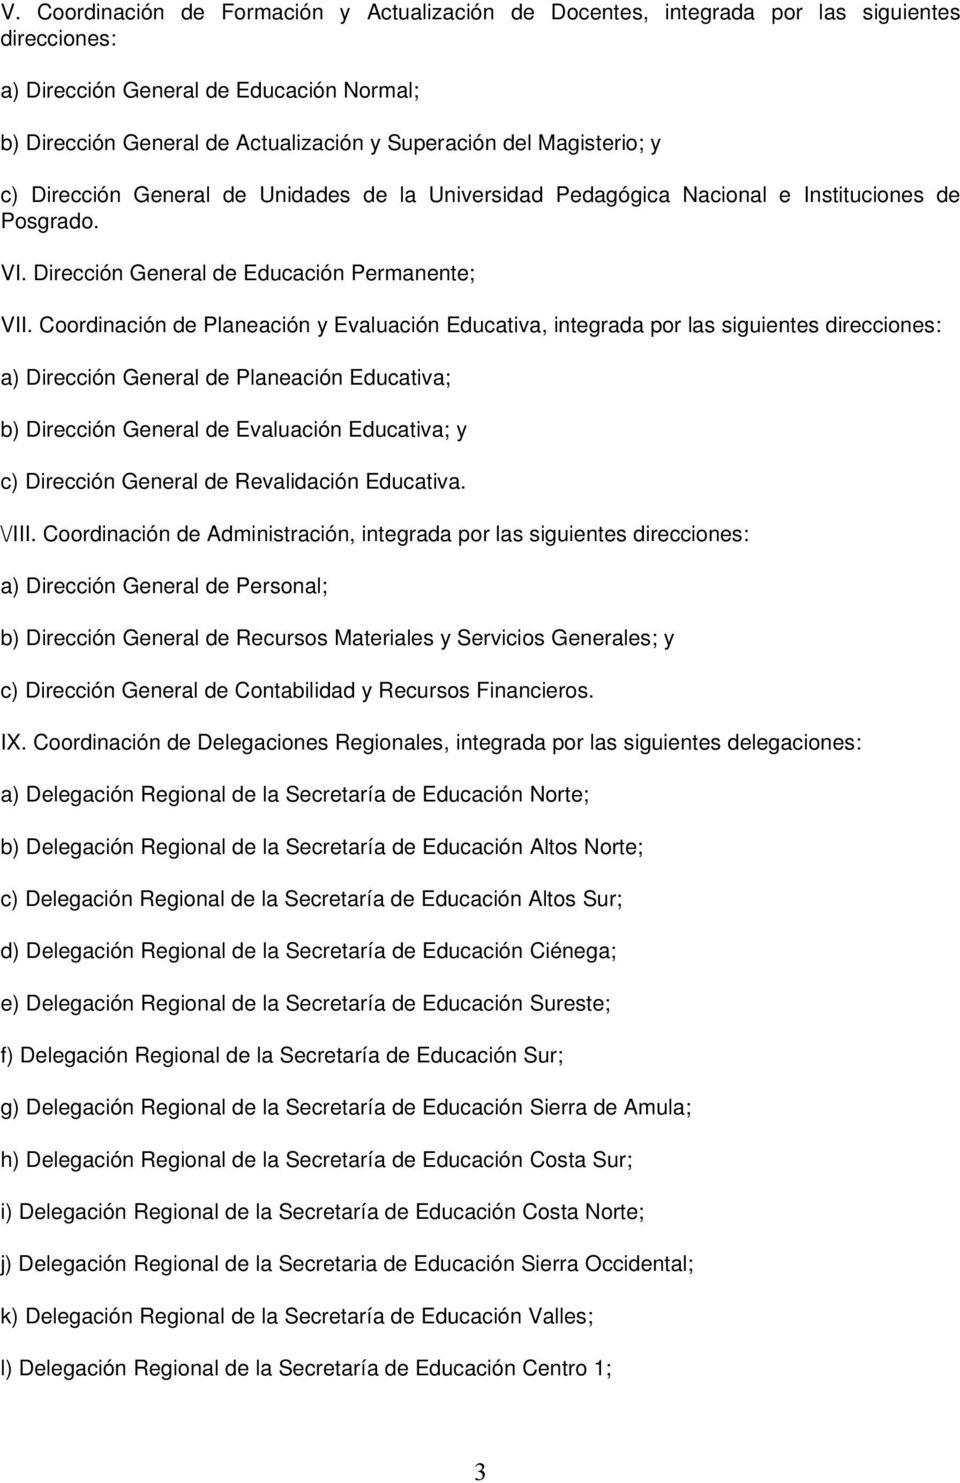 Coordinación de Planeación y Evaluación Educativa, integrada por las siguientes direcciones: a) Dirección General de Planeación Educativa; b) Dirección General de Evaluación Educativa; y c) Dirección